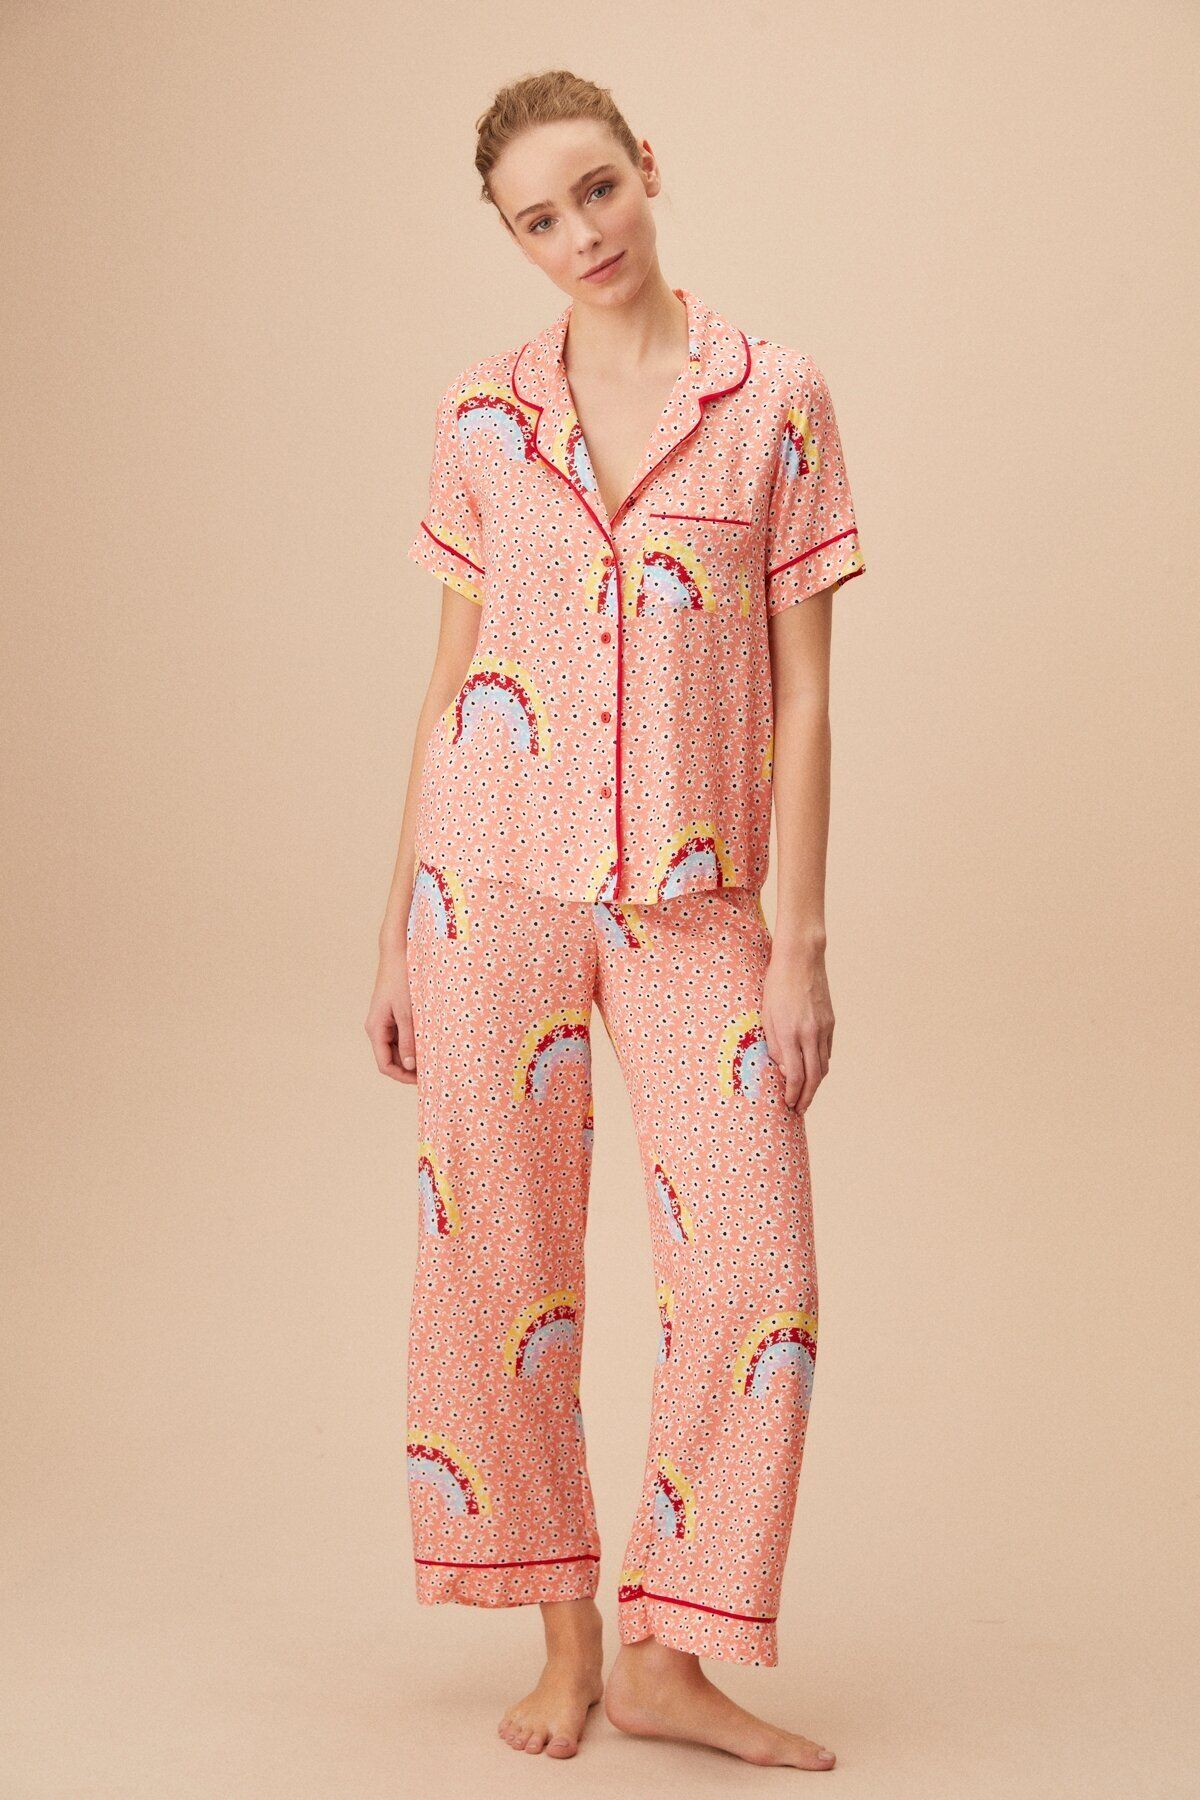 Suwen Iris Maskulen Pijama Takımı